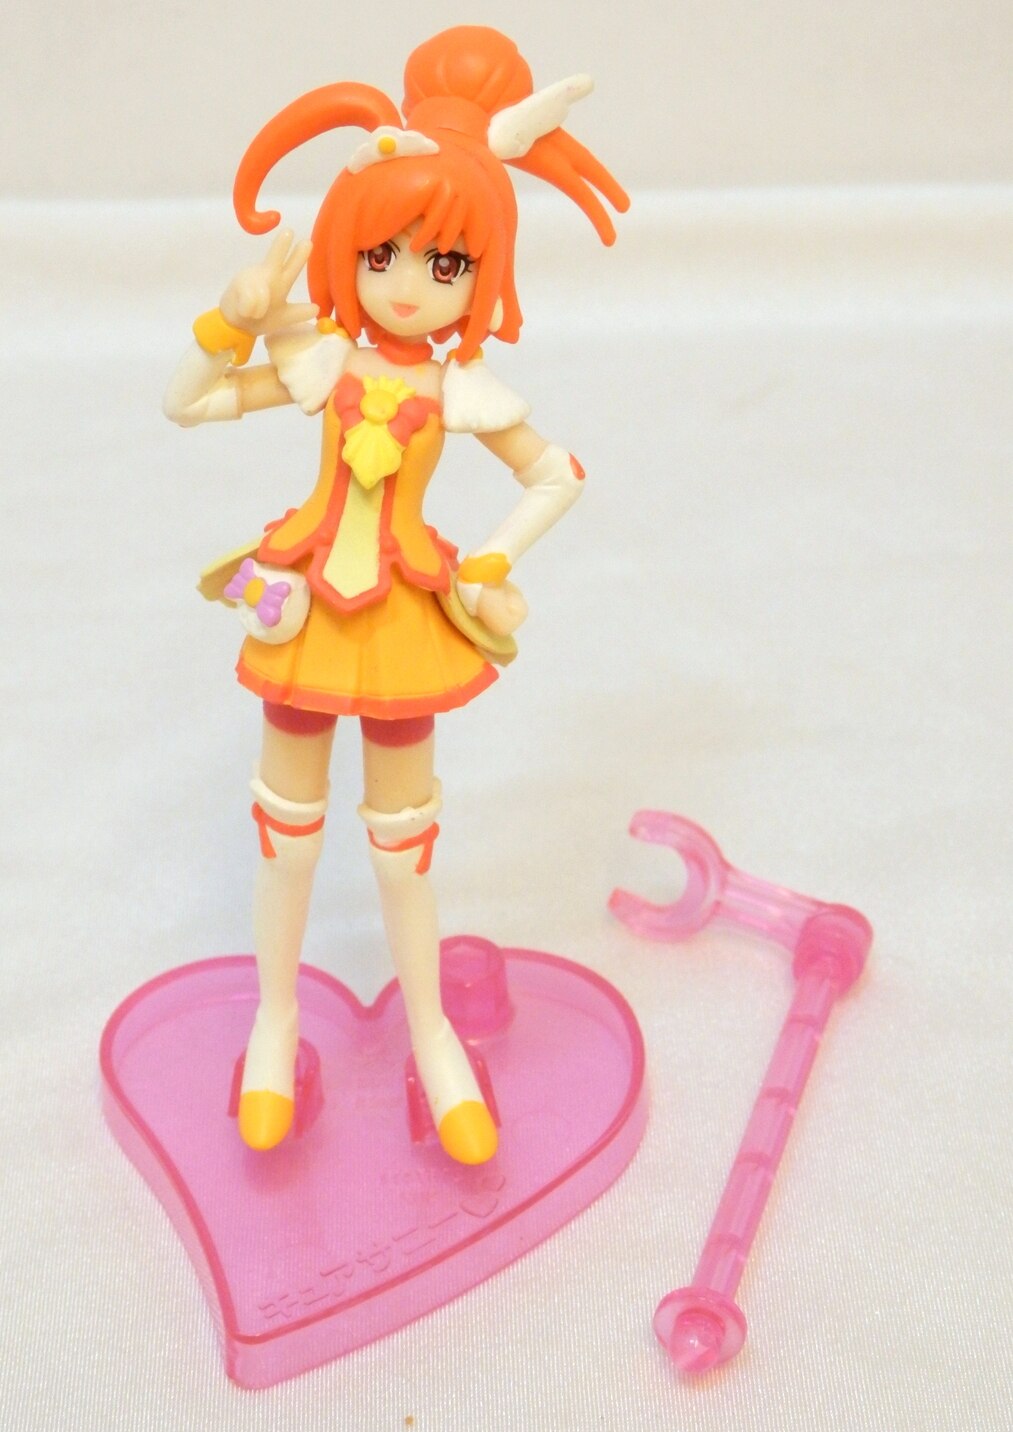 Bandai Smile Pretty Cure Glitter Force Cutie Figure 2 2 Cure Sunny Mandarake 在线商店 6271